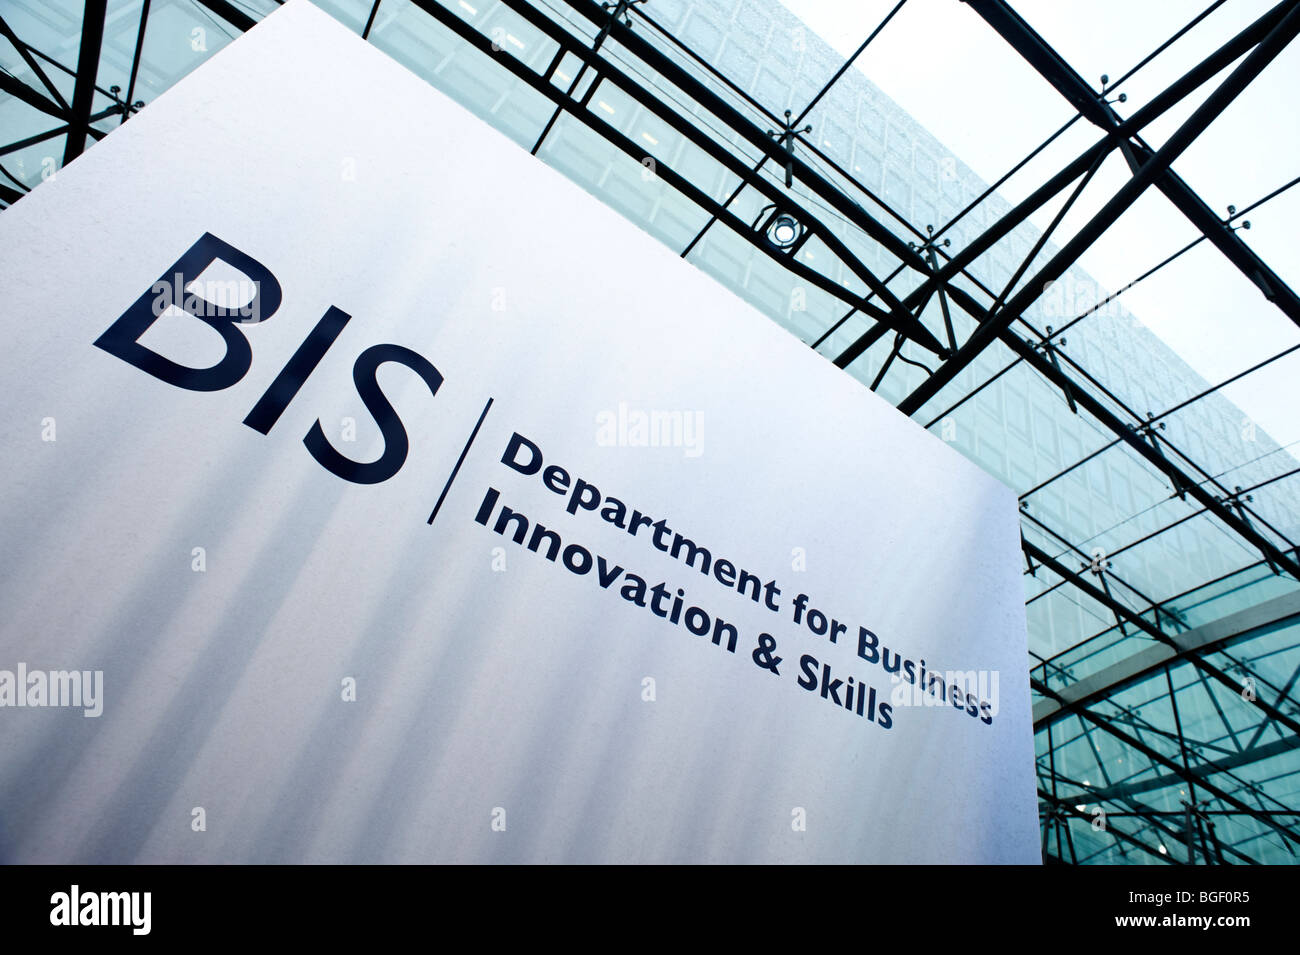 BIZ. Abteilung für Business Innovation & Fähigkeiten. London. UK 2009. Stockfoto